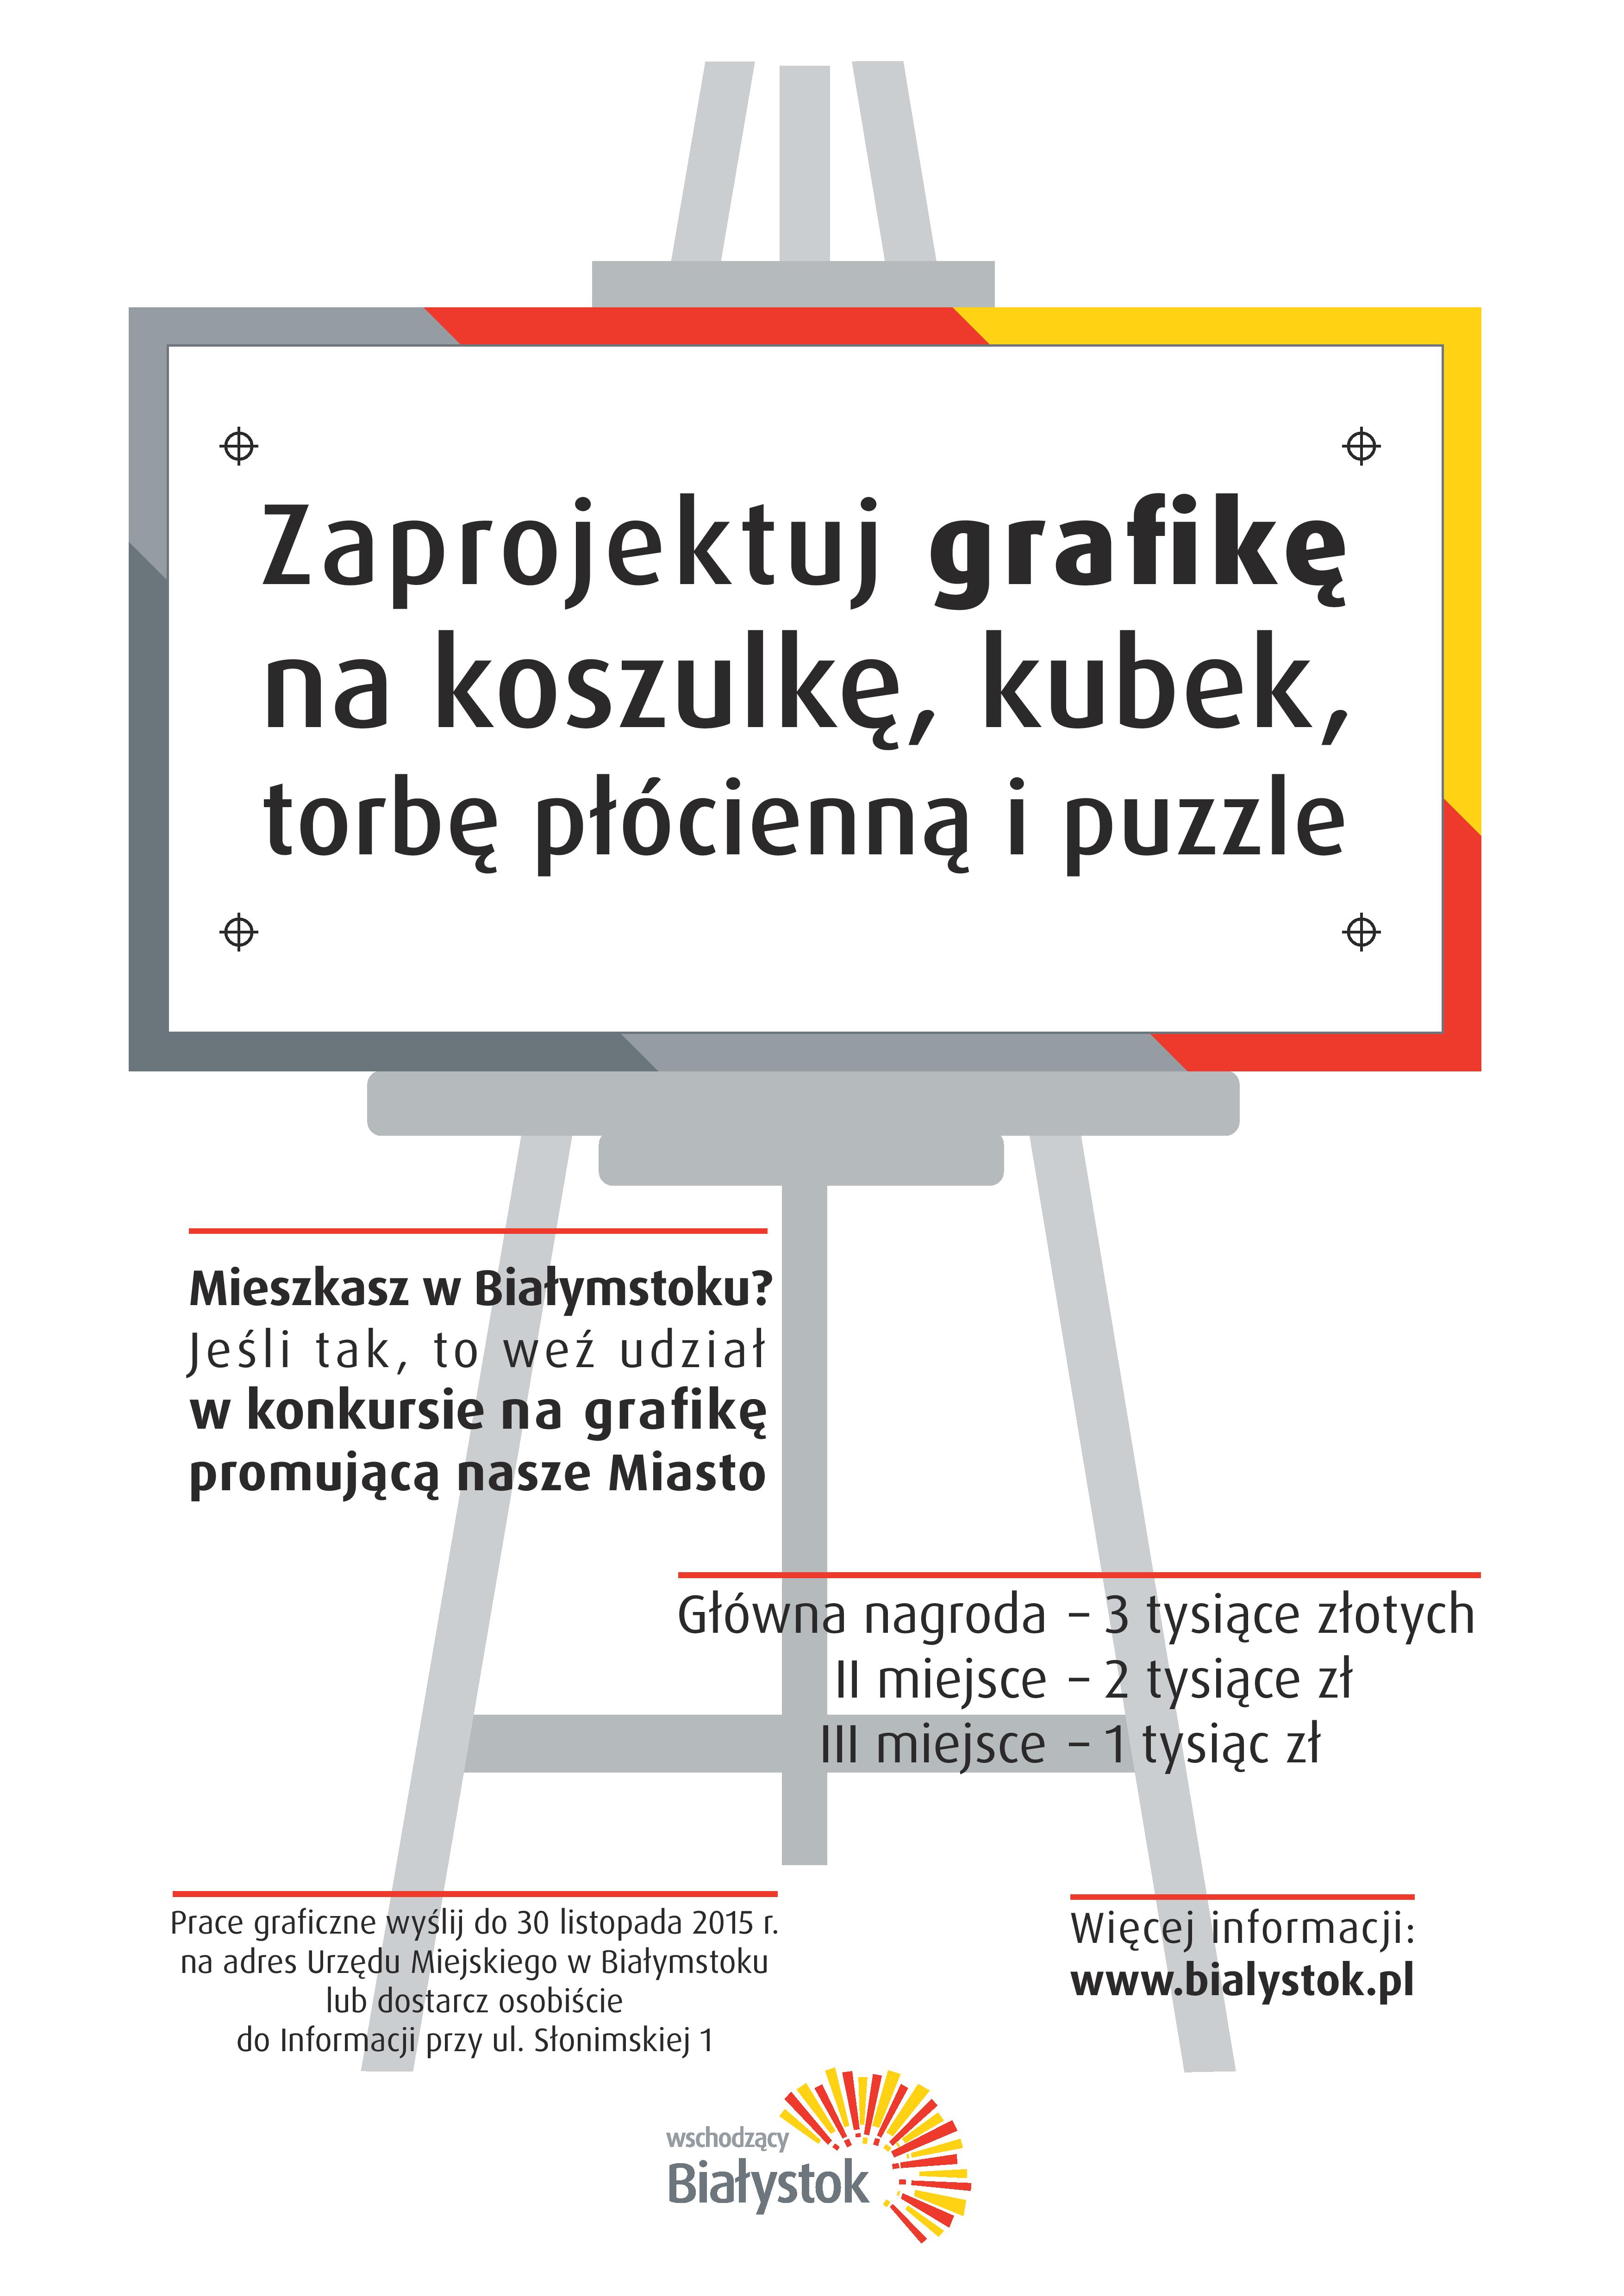 Plakat informujący o konkursie graficznym organizowanym przez Miasto Białystok